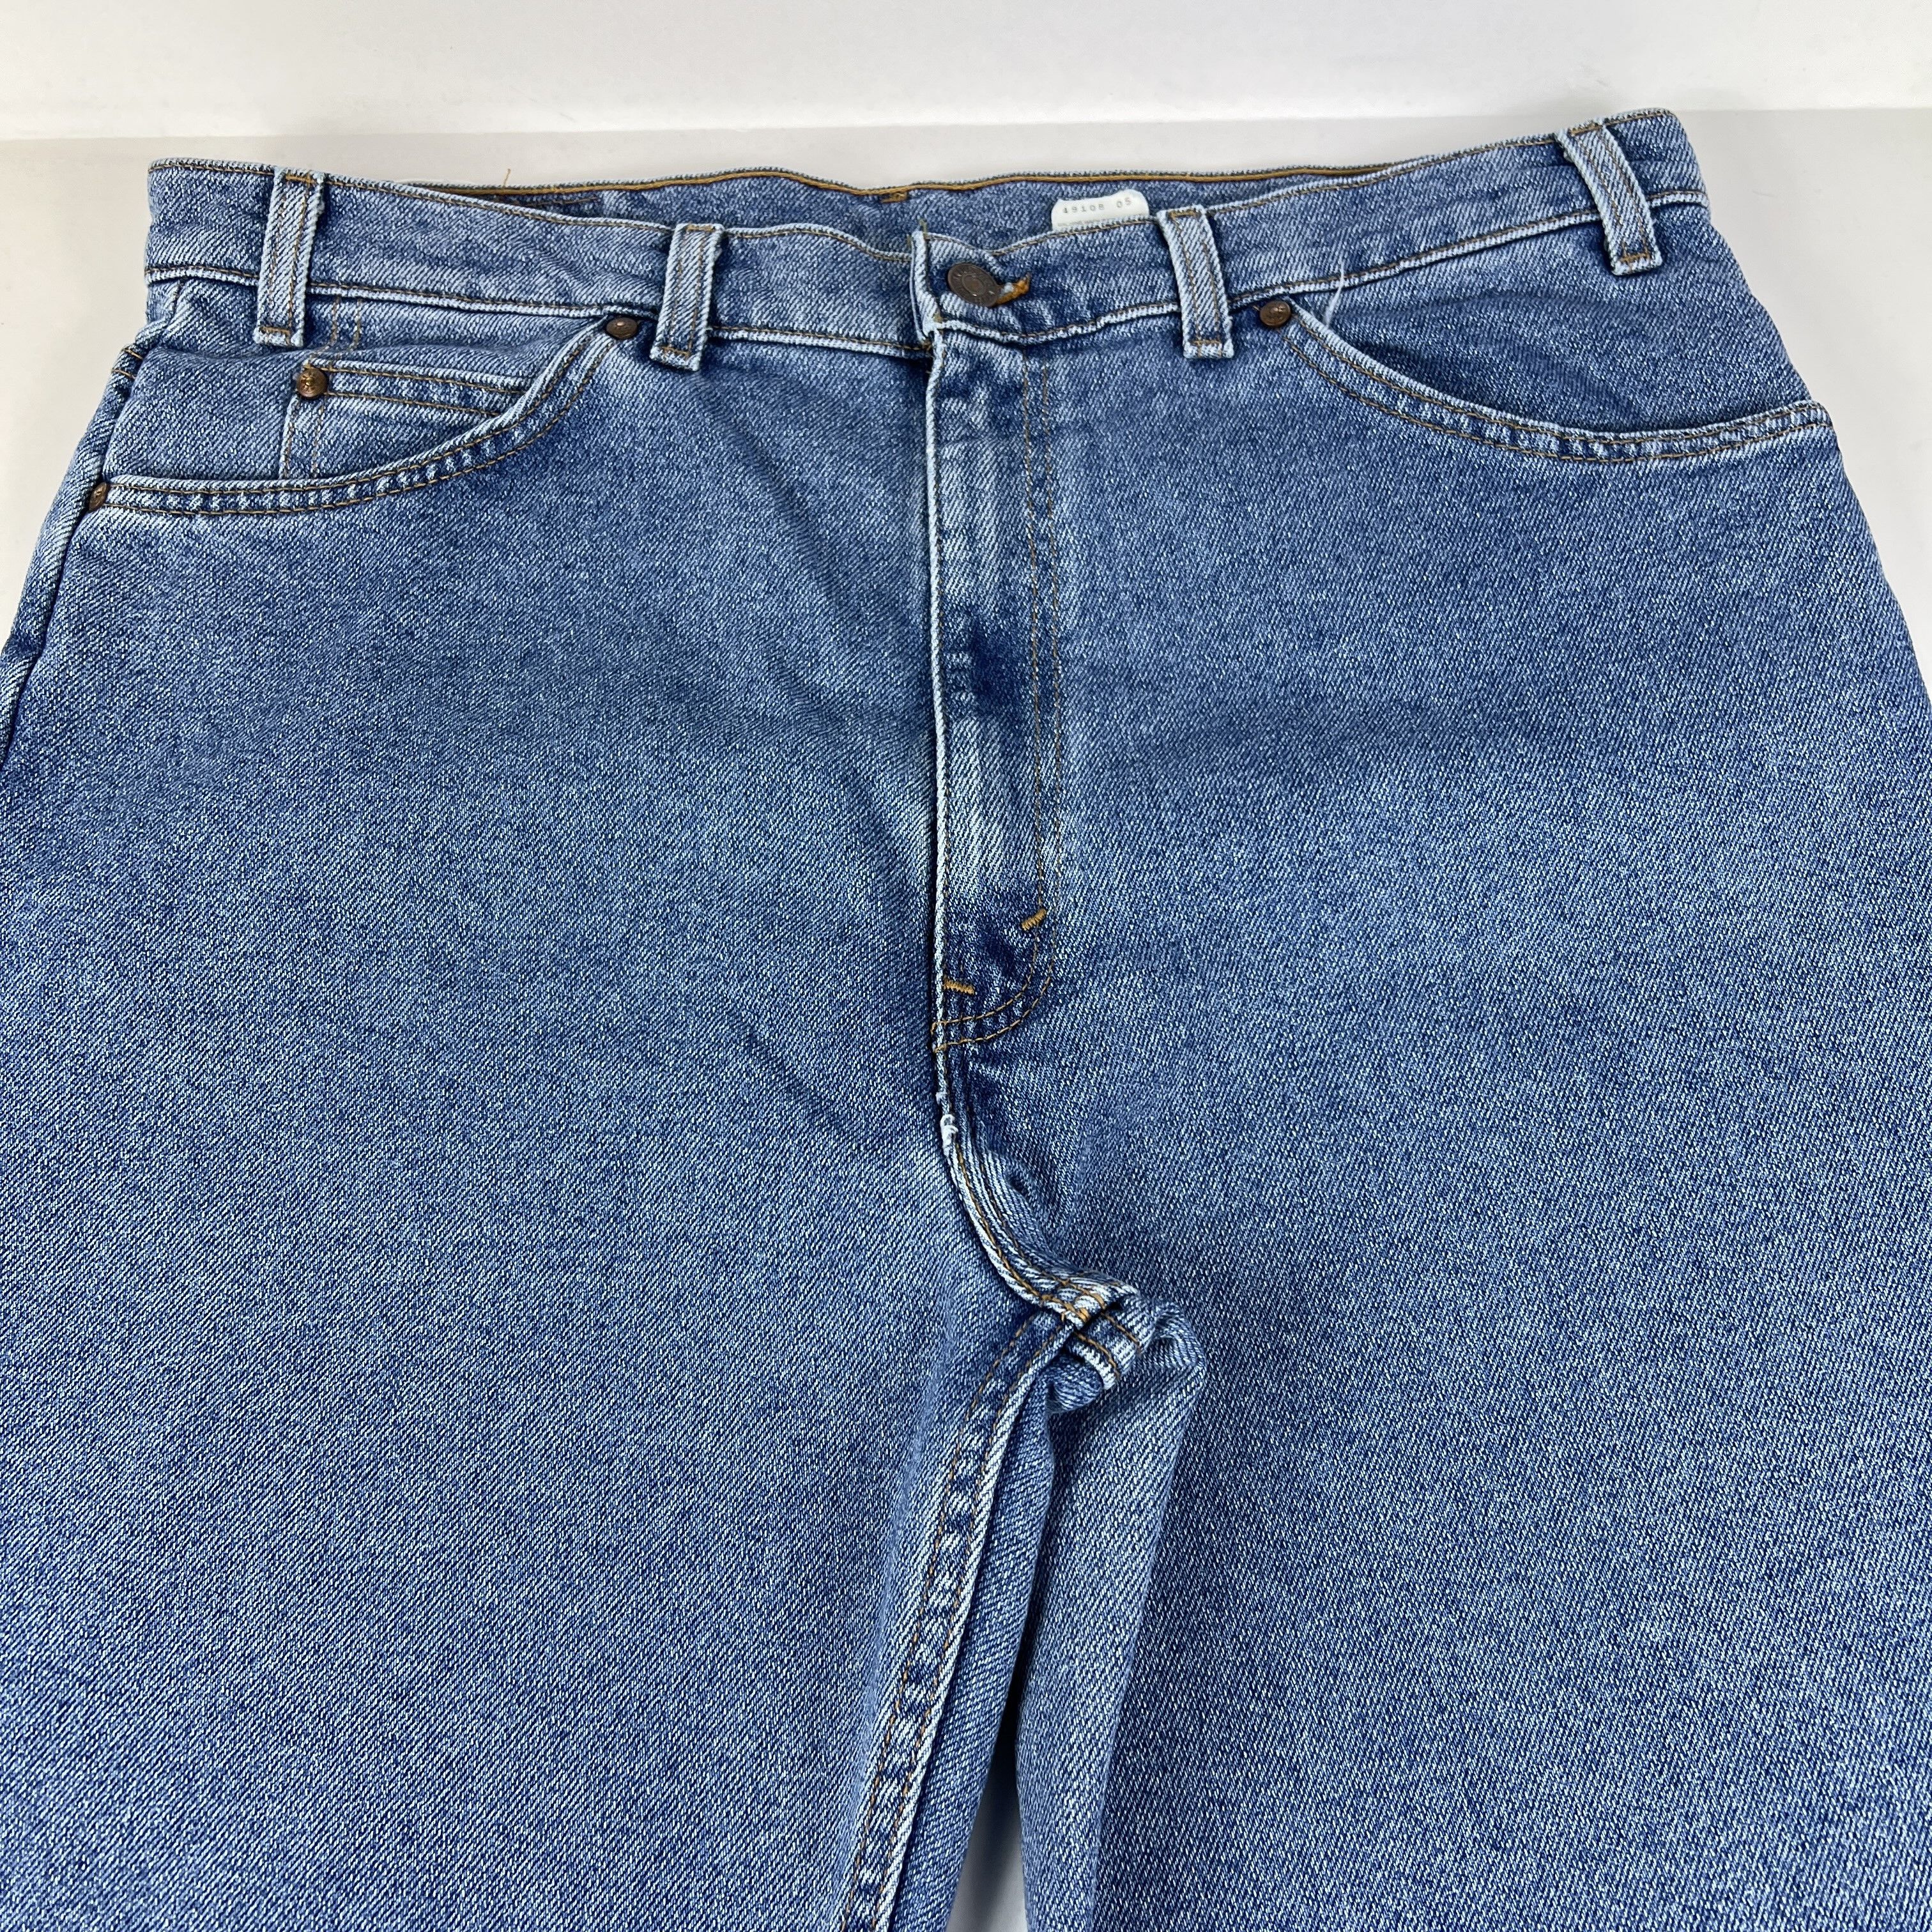 Vintage VTG 90s Levi's Jeans 540 Flex Relaxed Straight Blue Denim Size US 36 / EU 52 - 2 Preview